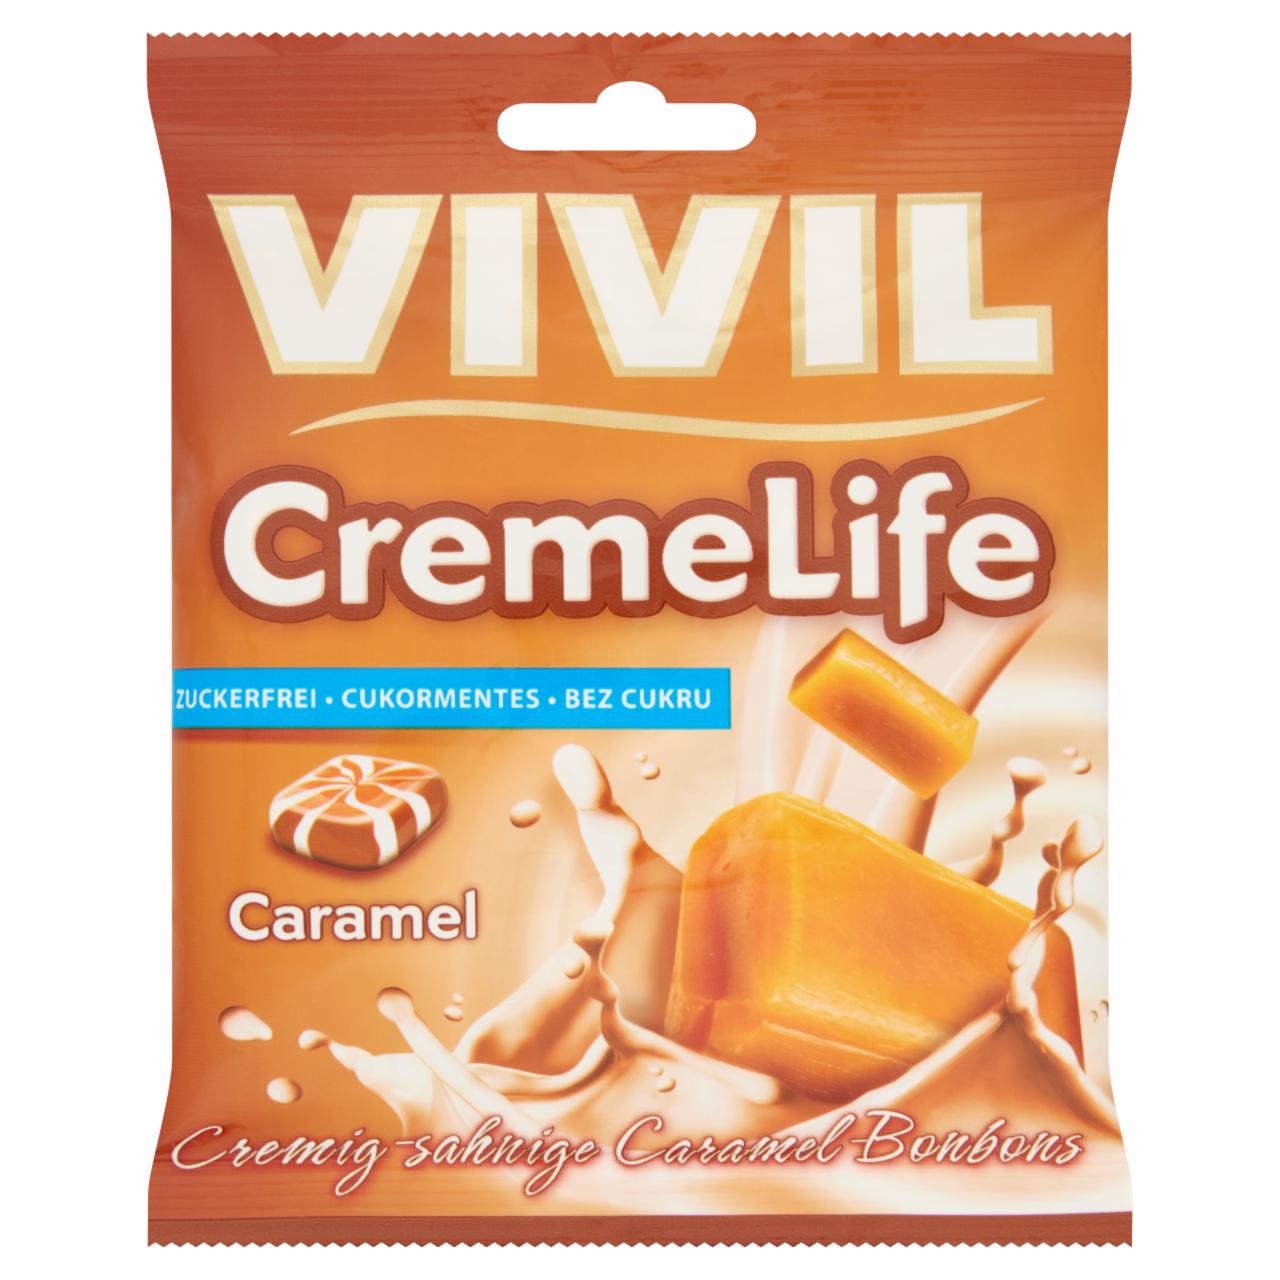 Képek - Vivil CremeLife karamell ízesítésű cukormentes töltetlen keménycukorka édesítőszerrel 40 g